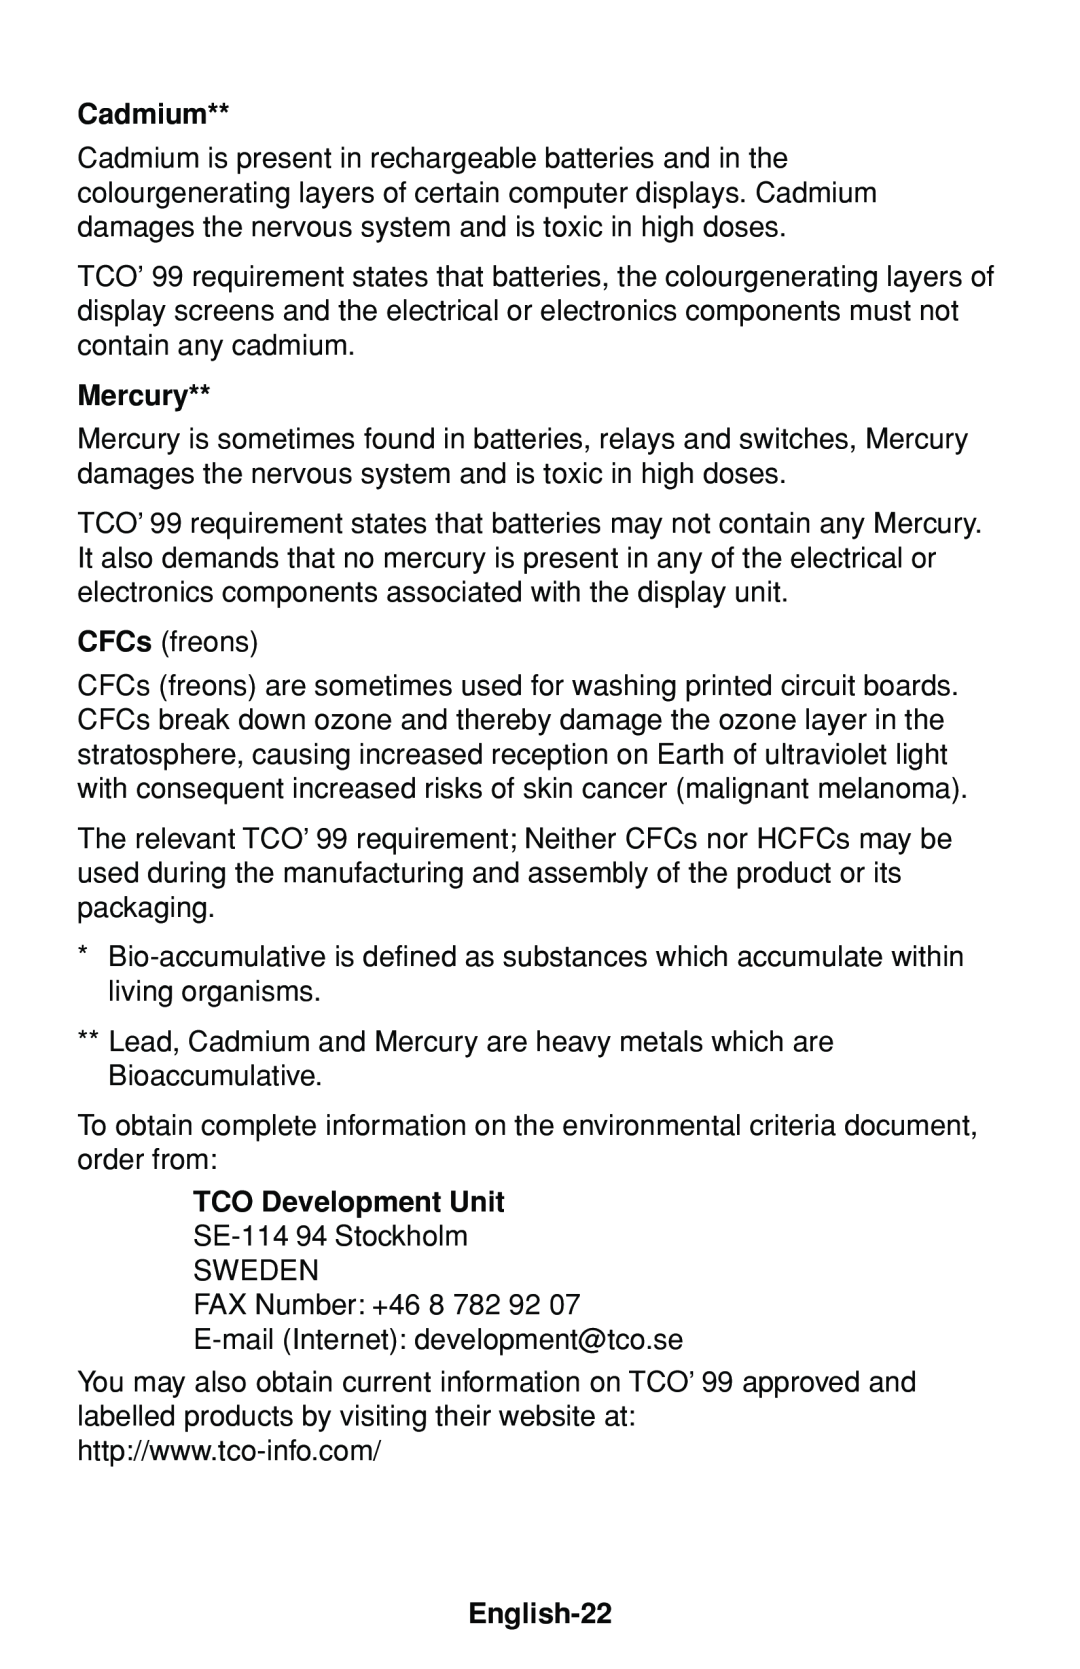 NEC FP1375X user manual Cadmium, Mercury, TCO Development Unit, English-22 